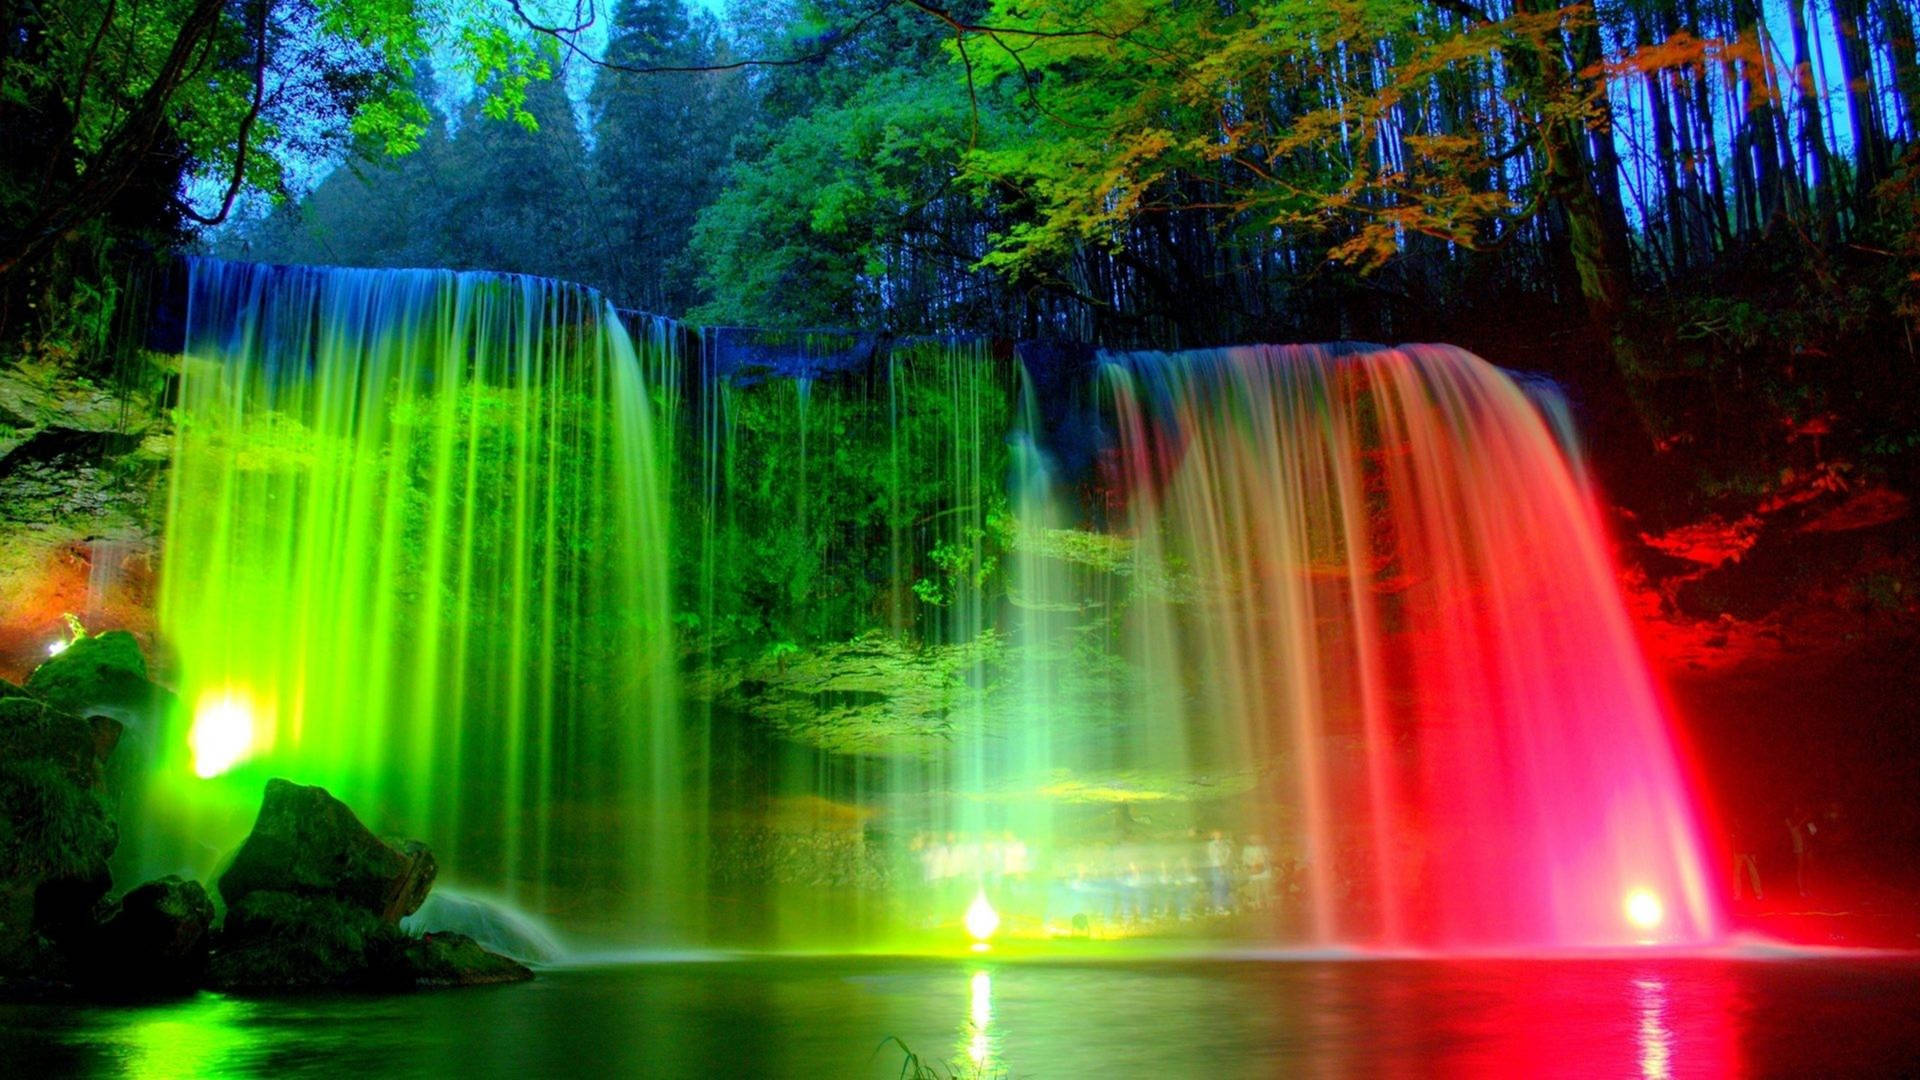 Illuminated Hd Waterfall Nabegataki Park